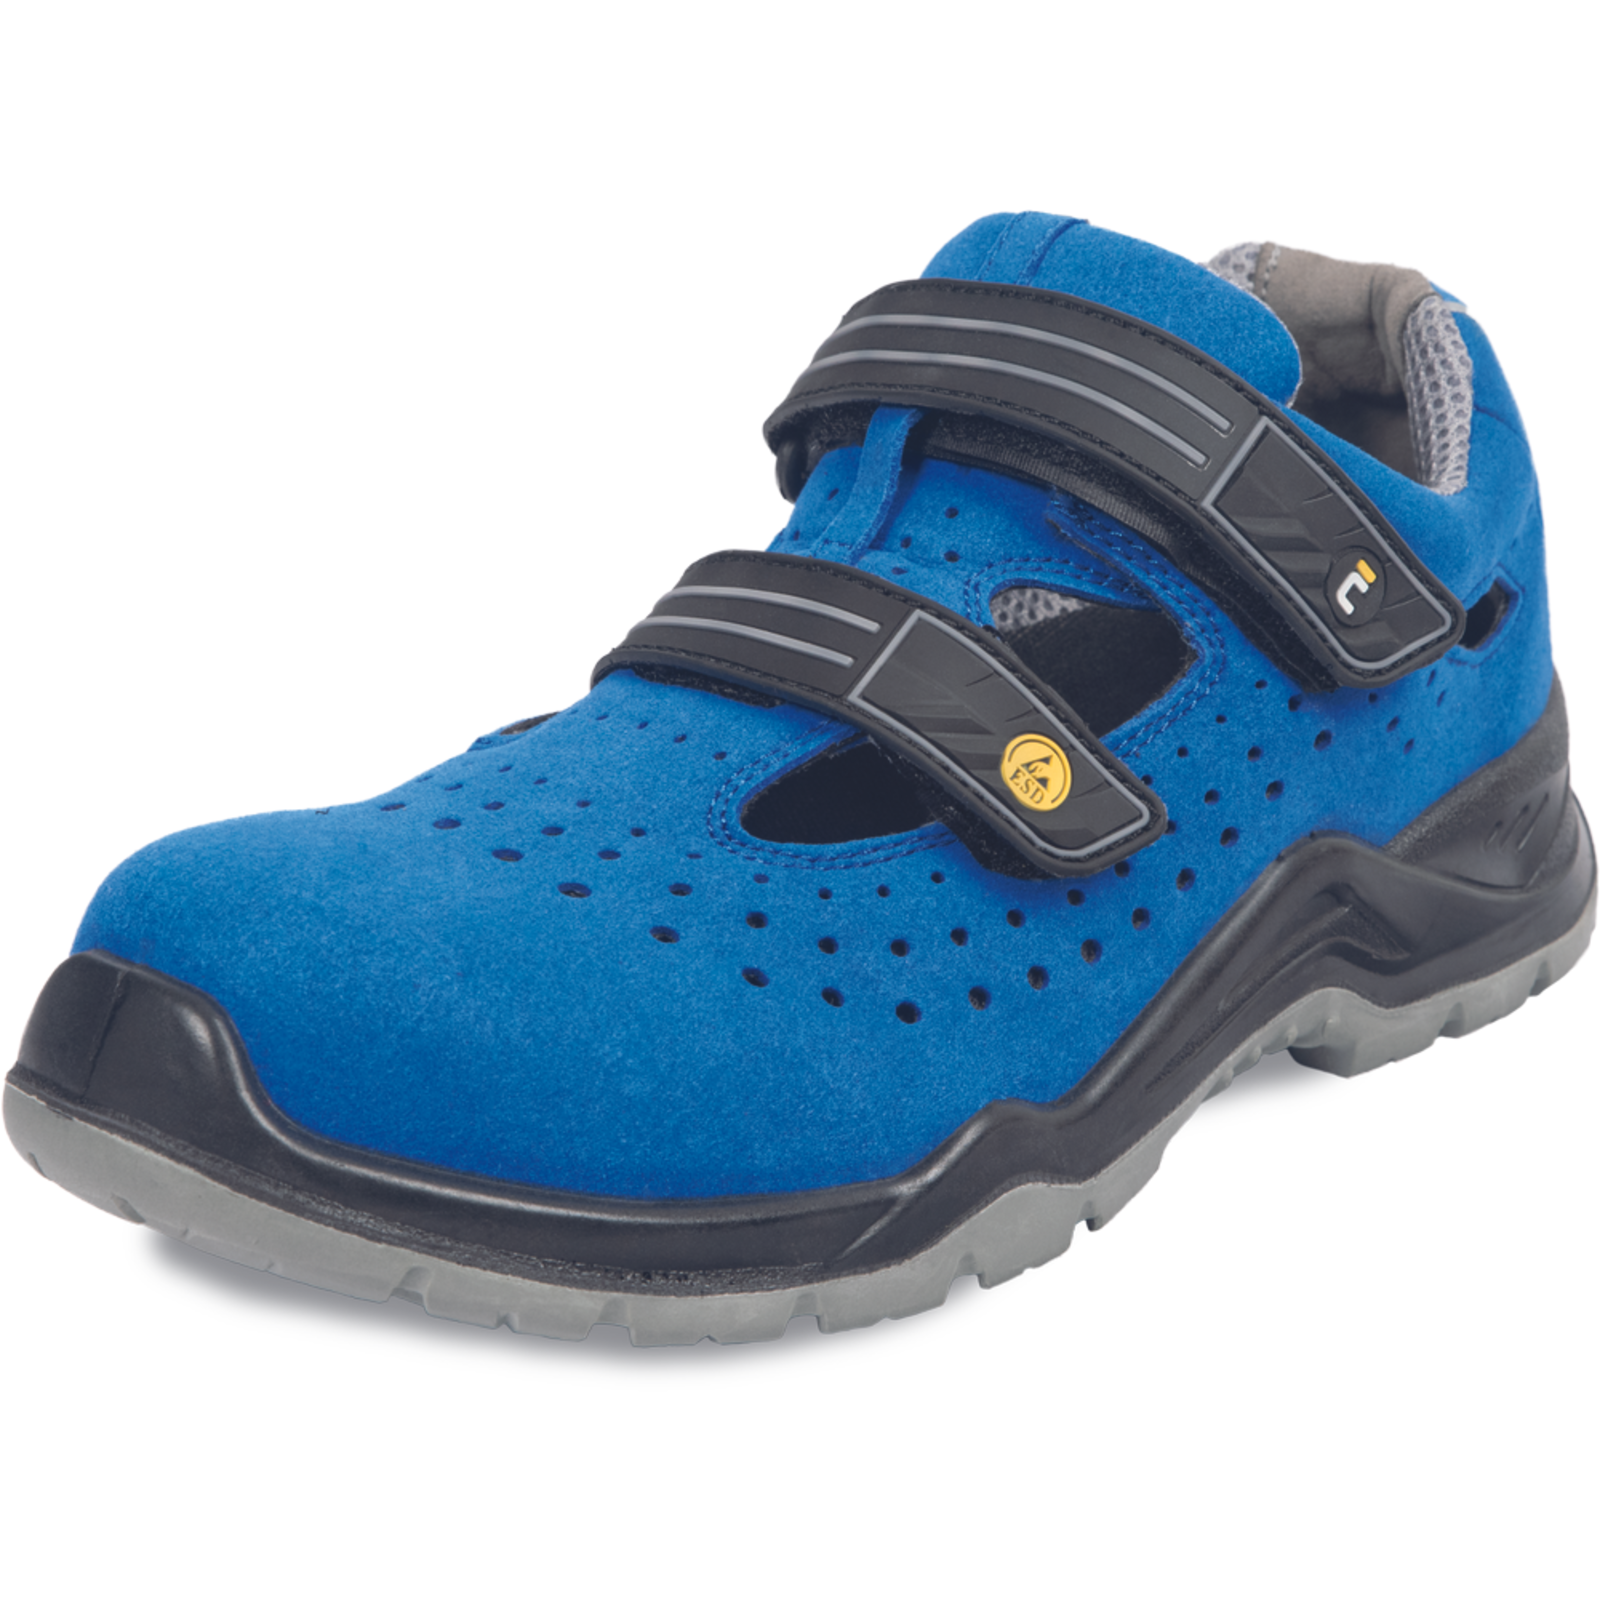 Bezpečnostné pracovné sandále Cerva Hagewill S1P - veľkosť: 38, farba: modrá